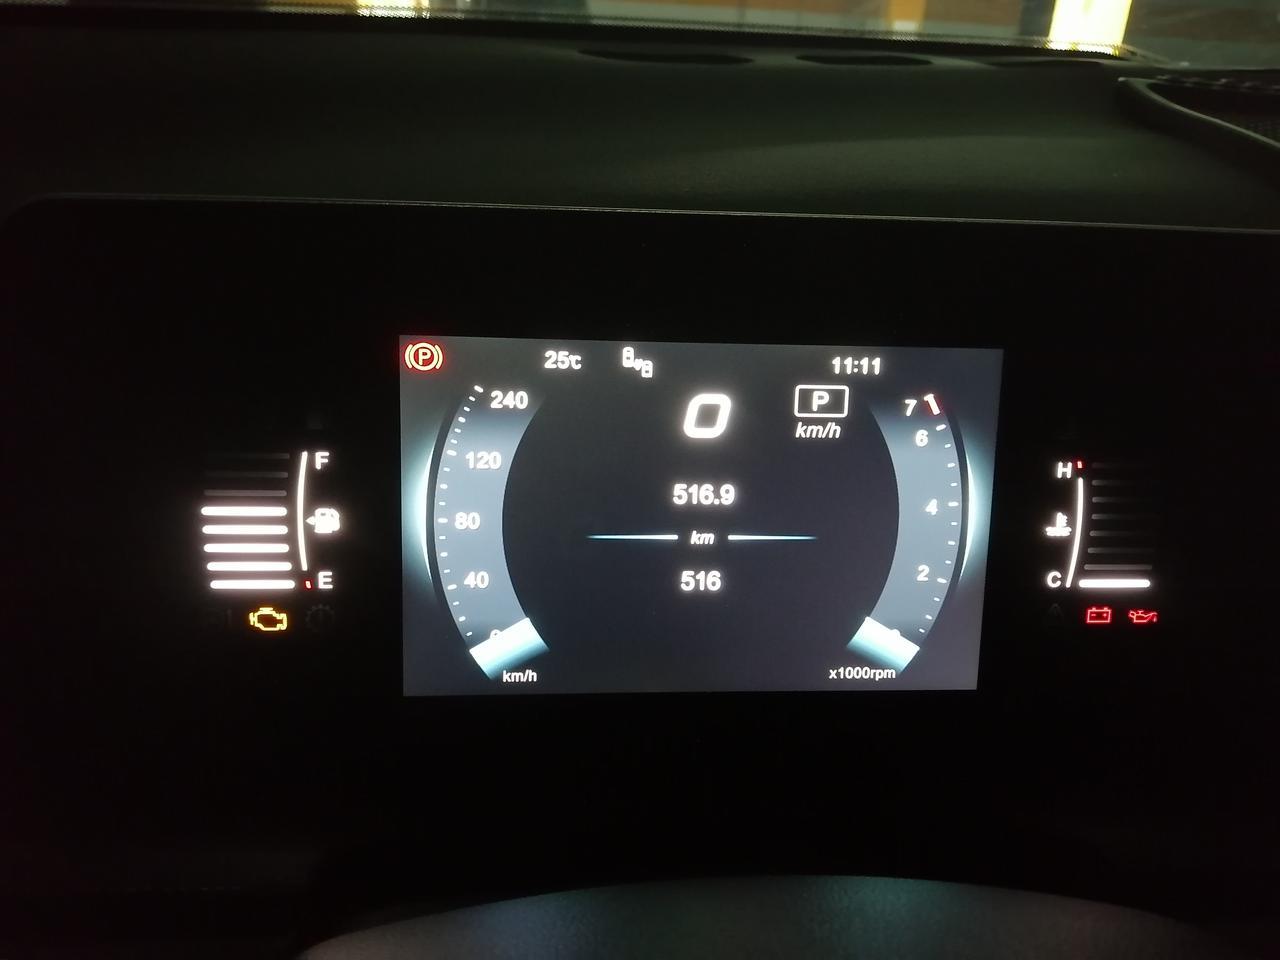 北京x7 通电后没有启动车辆这三个灯亮是什么意思？启动车辆后这三个灯就没有了。这种正常吗